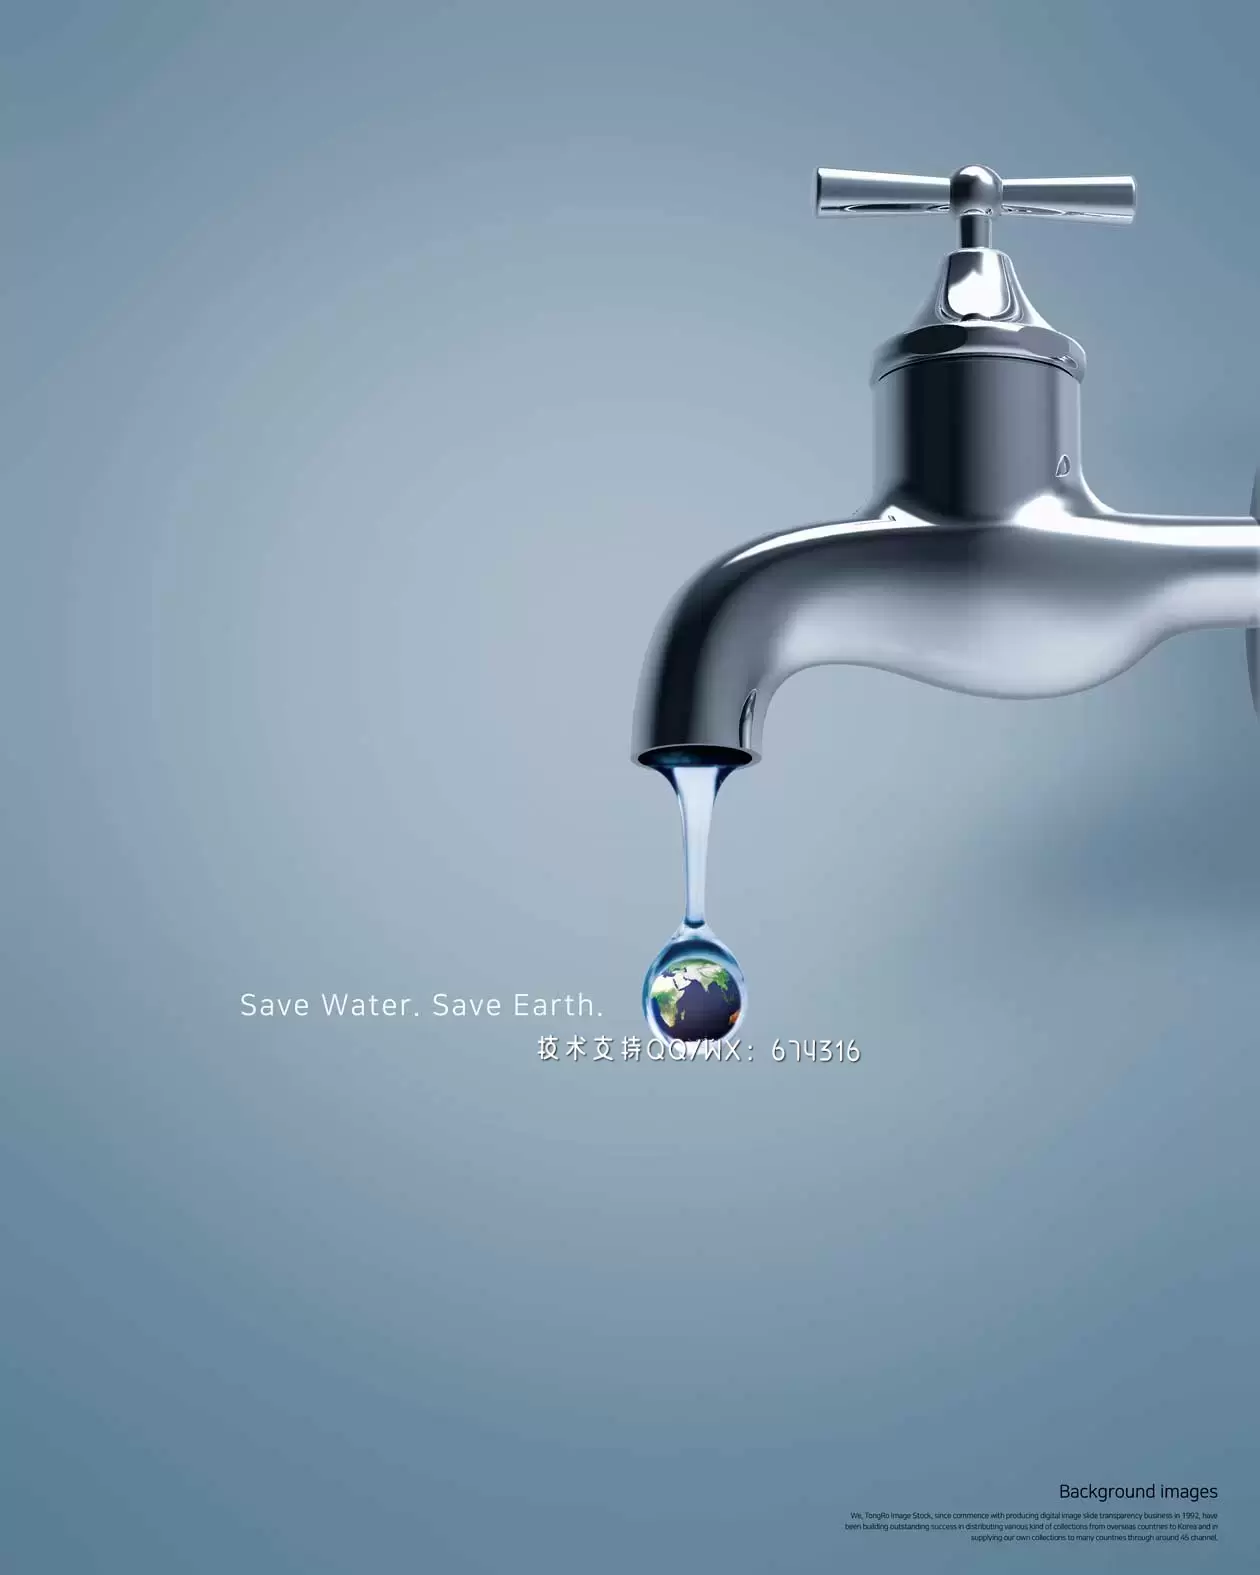 节约用水珍惜水资源主题海报设计模板 (psd)插图